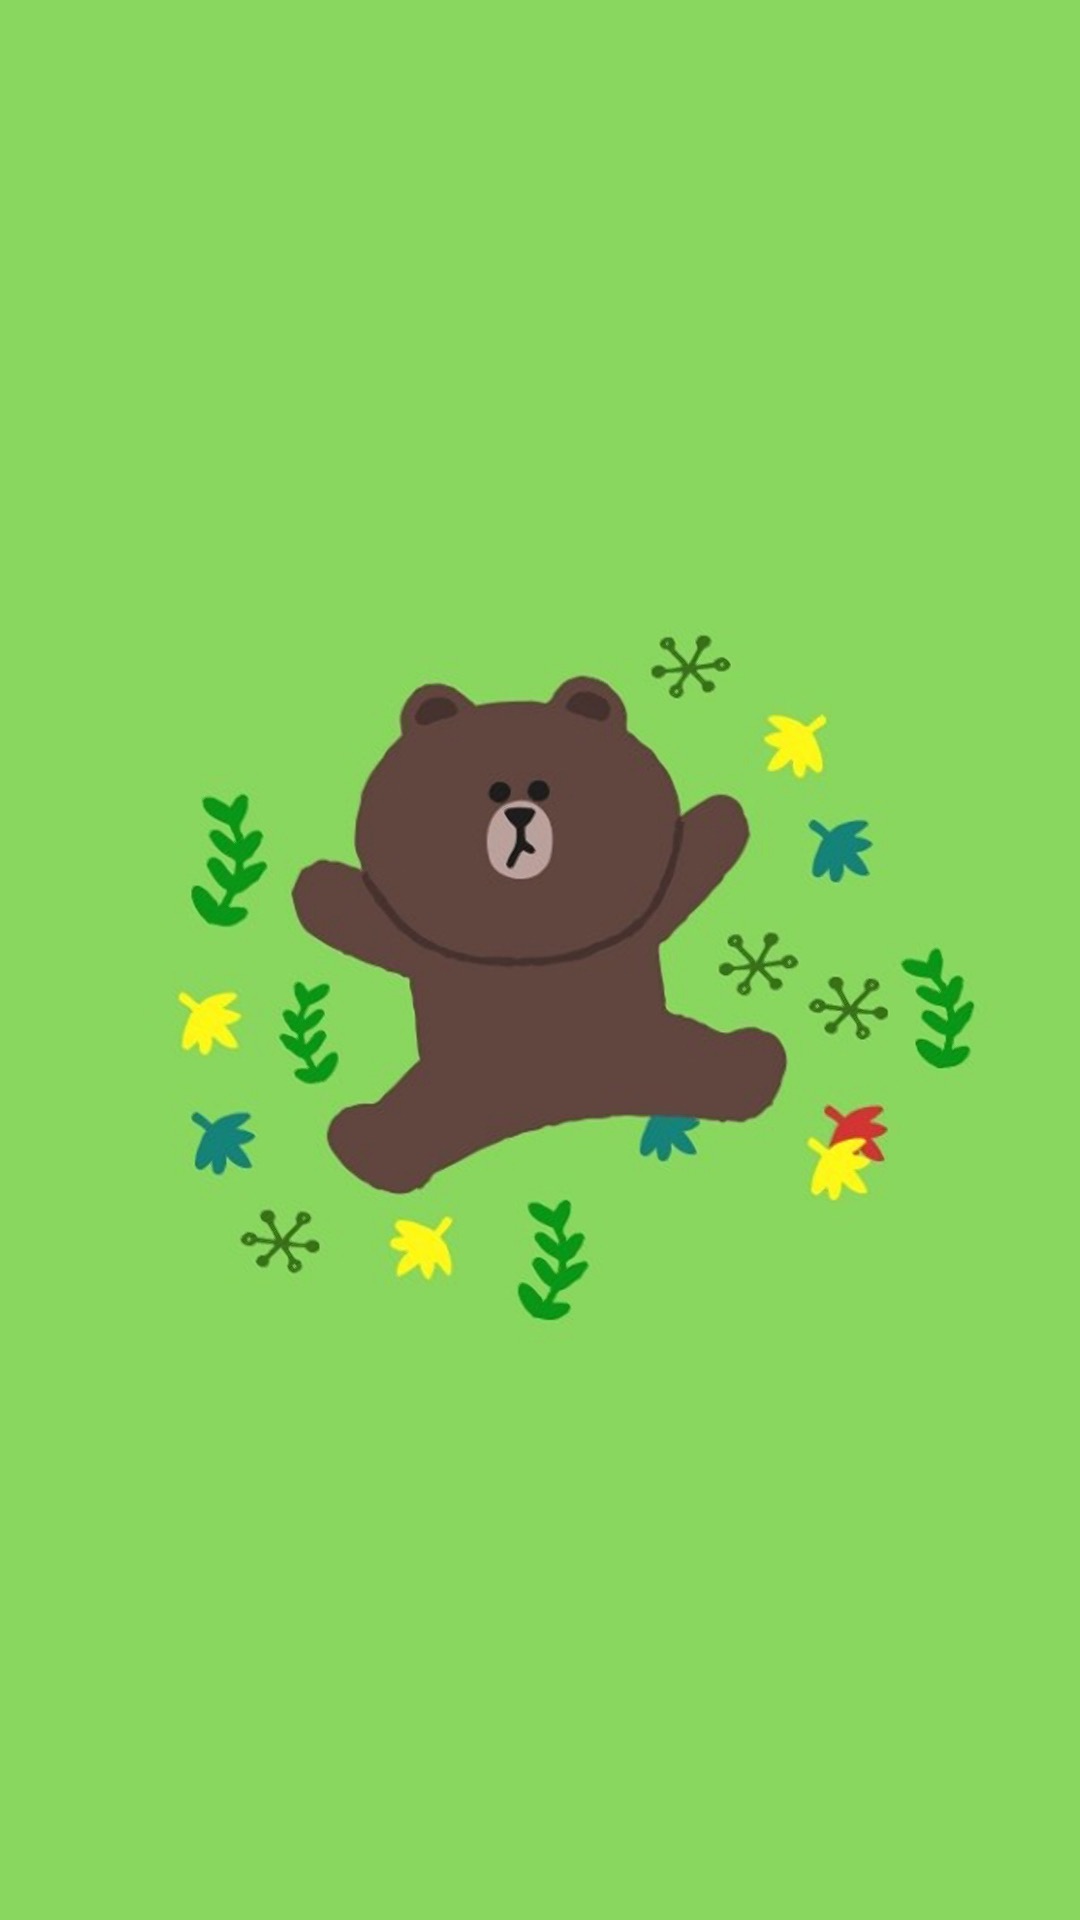 布朗熊图片手机壁纸 布朗熊iphone壁纸高清(4)